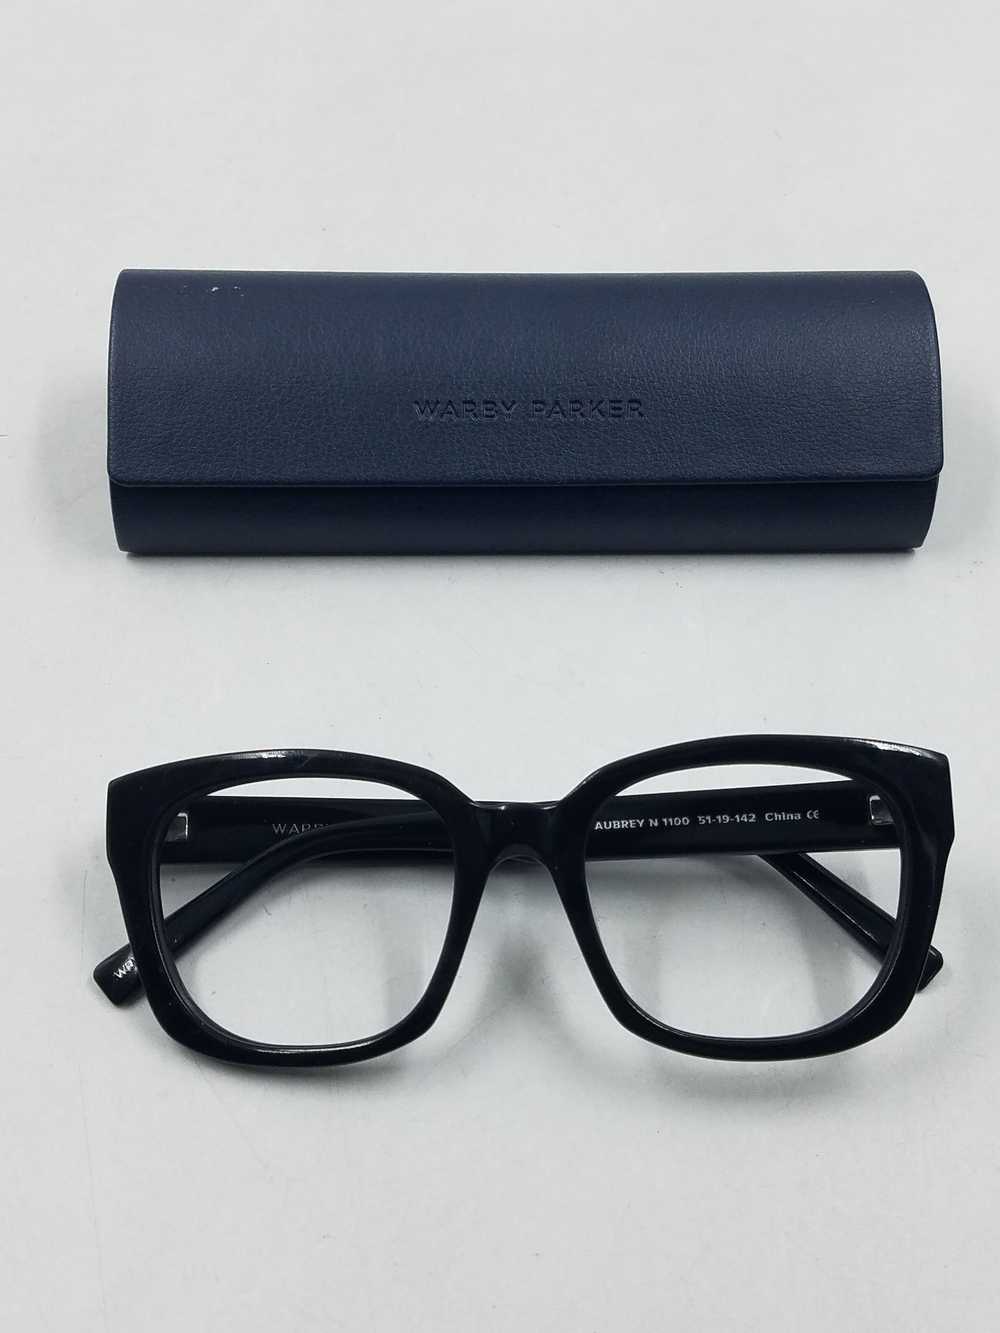 Warby Parker Aubrey Black Eyeglasses - image 1